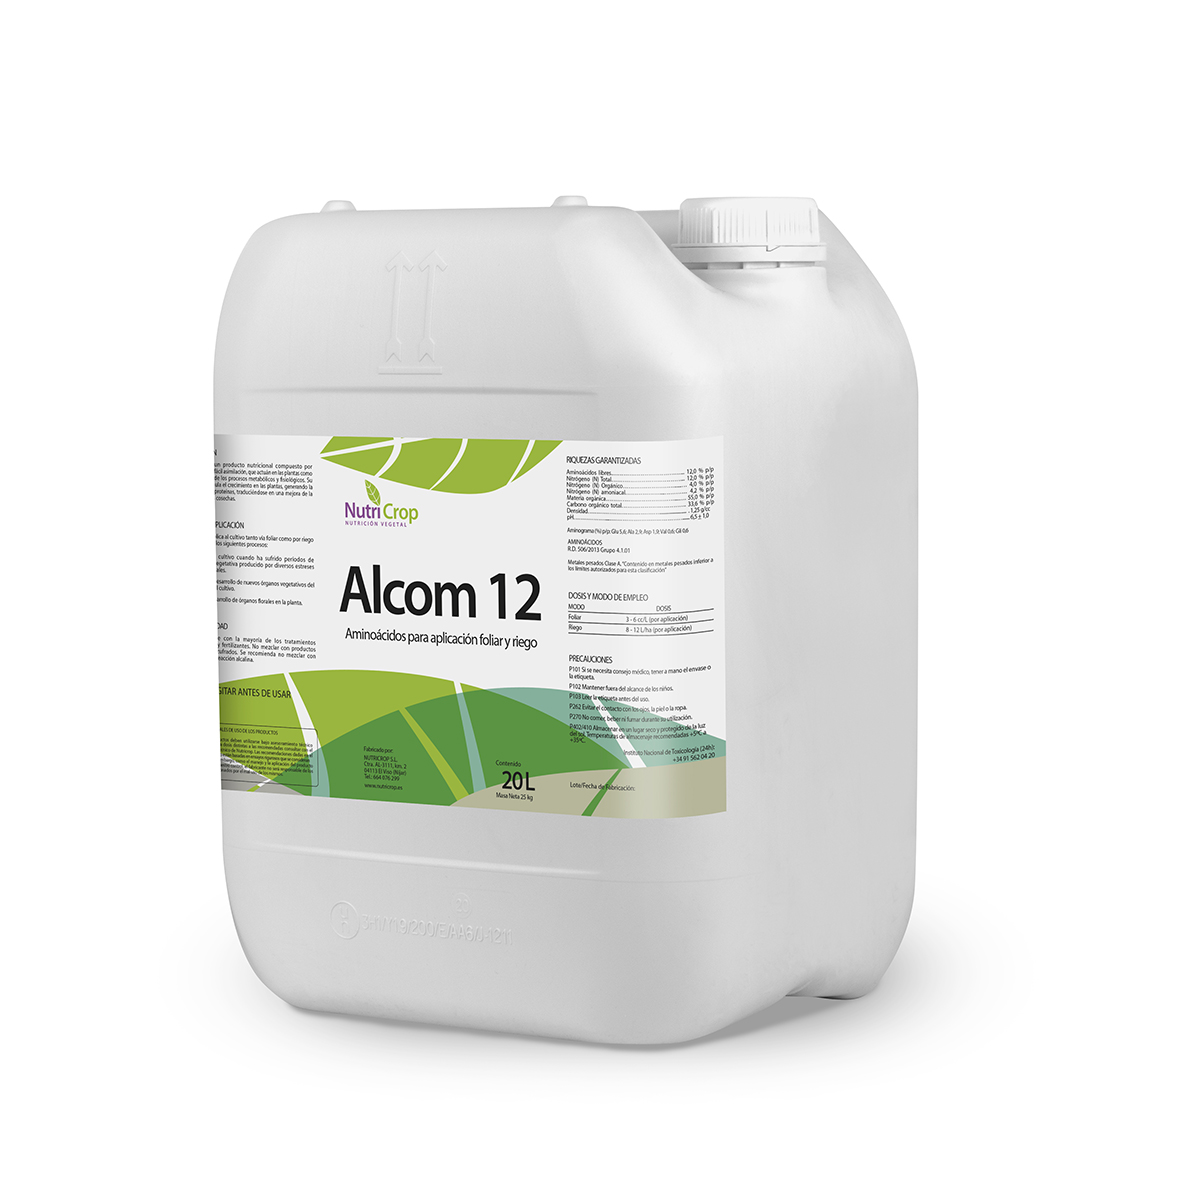 Alcom 12 - Nutricrop